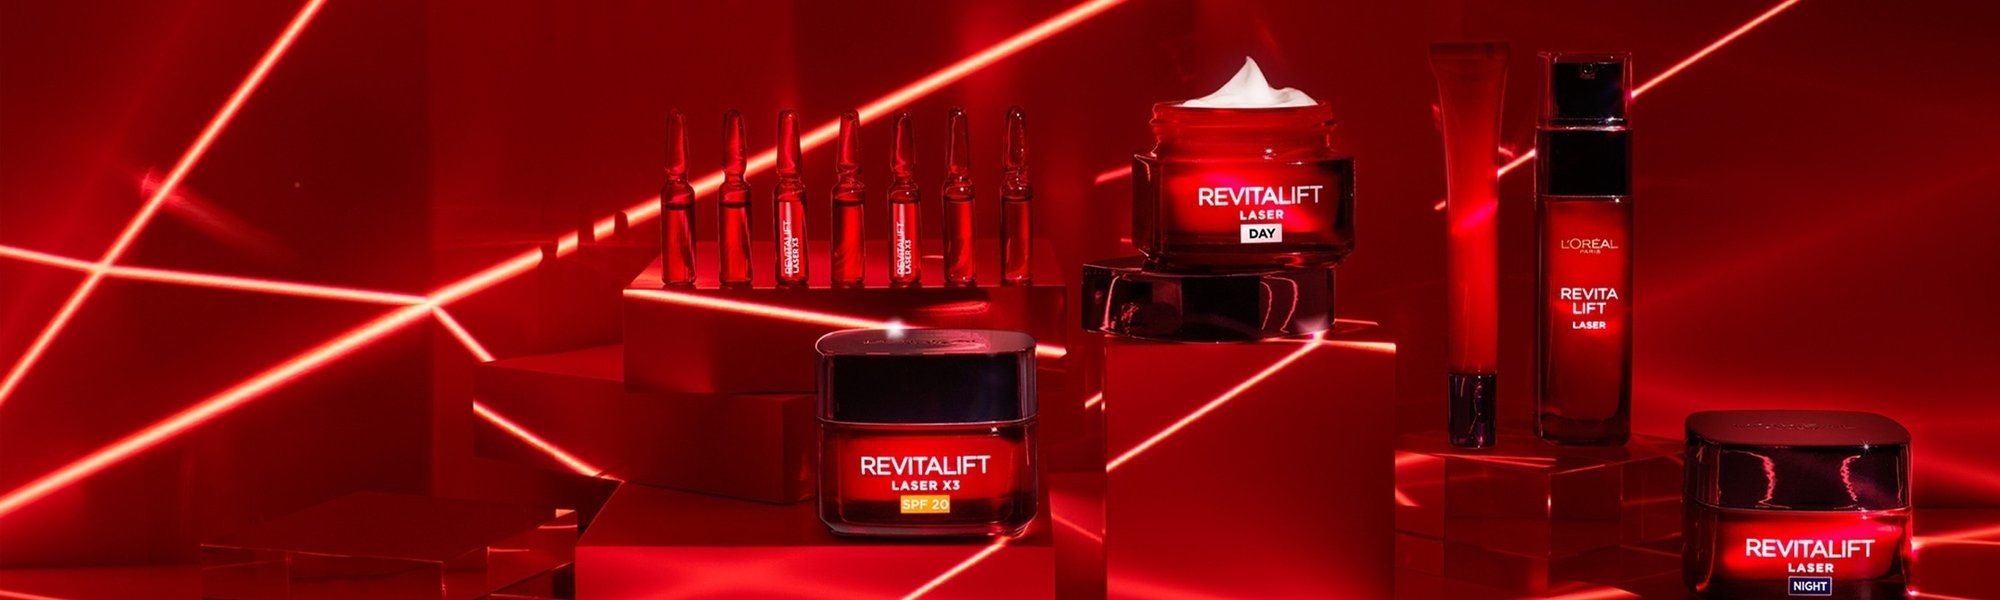 Roter Banner mit Produkten aus der Revitalift Produktreihe